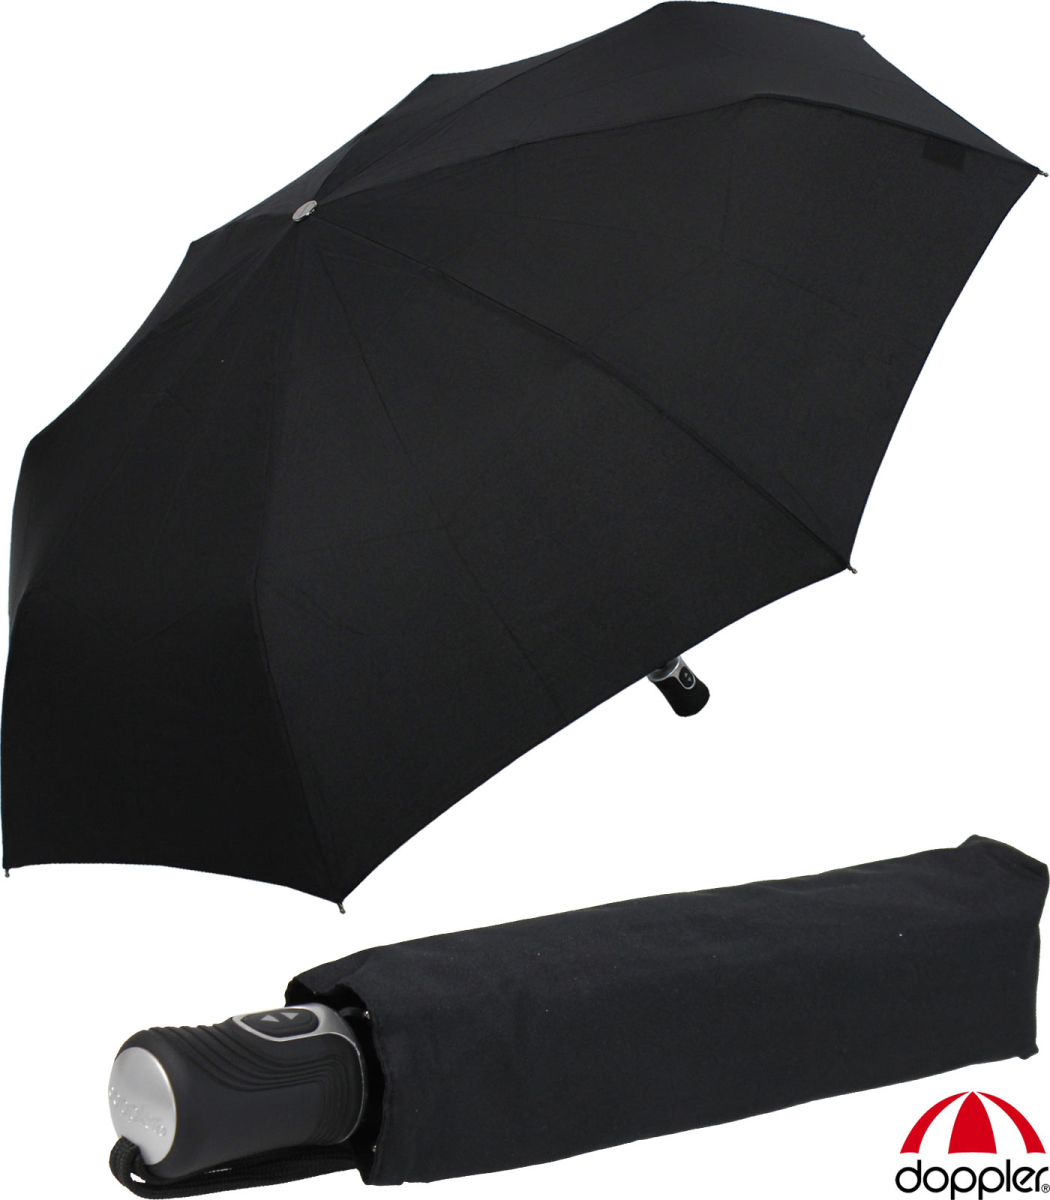 € mit Autom, Auf- Herren Regenschirm Zu- BIG Schirm Doppler Magic Carbon 44,99